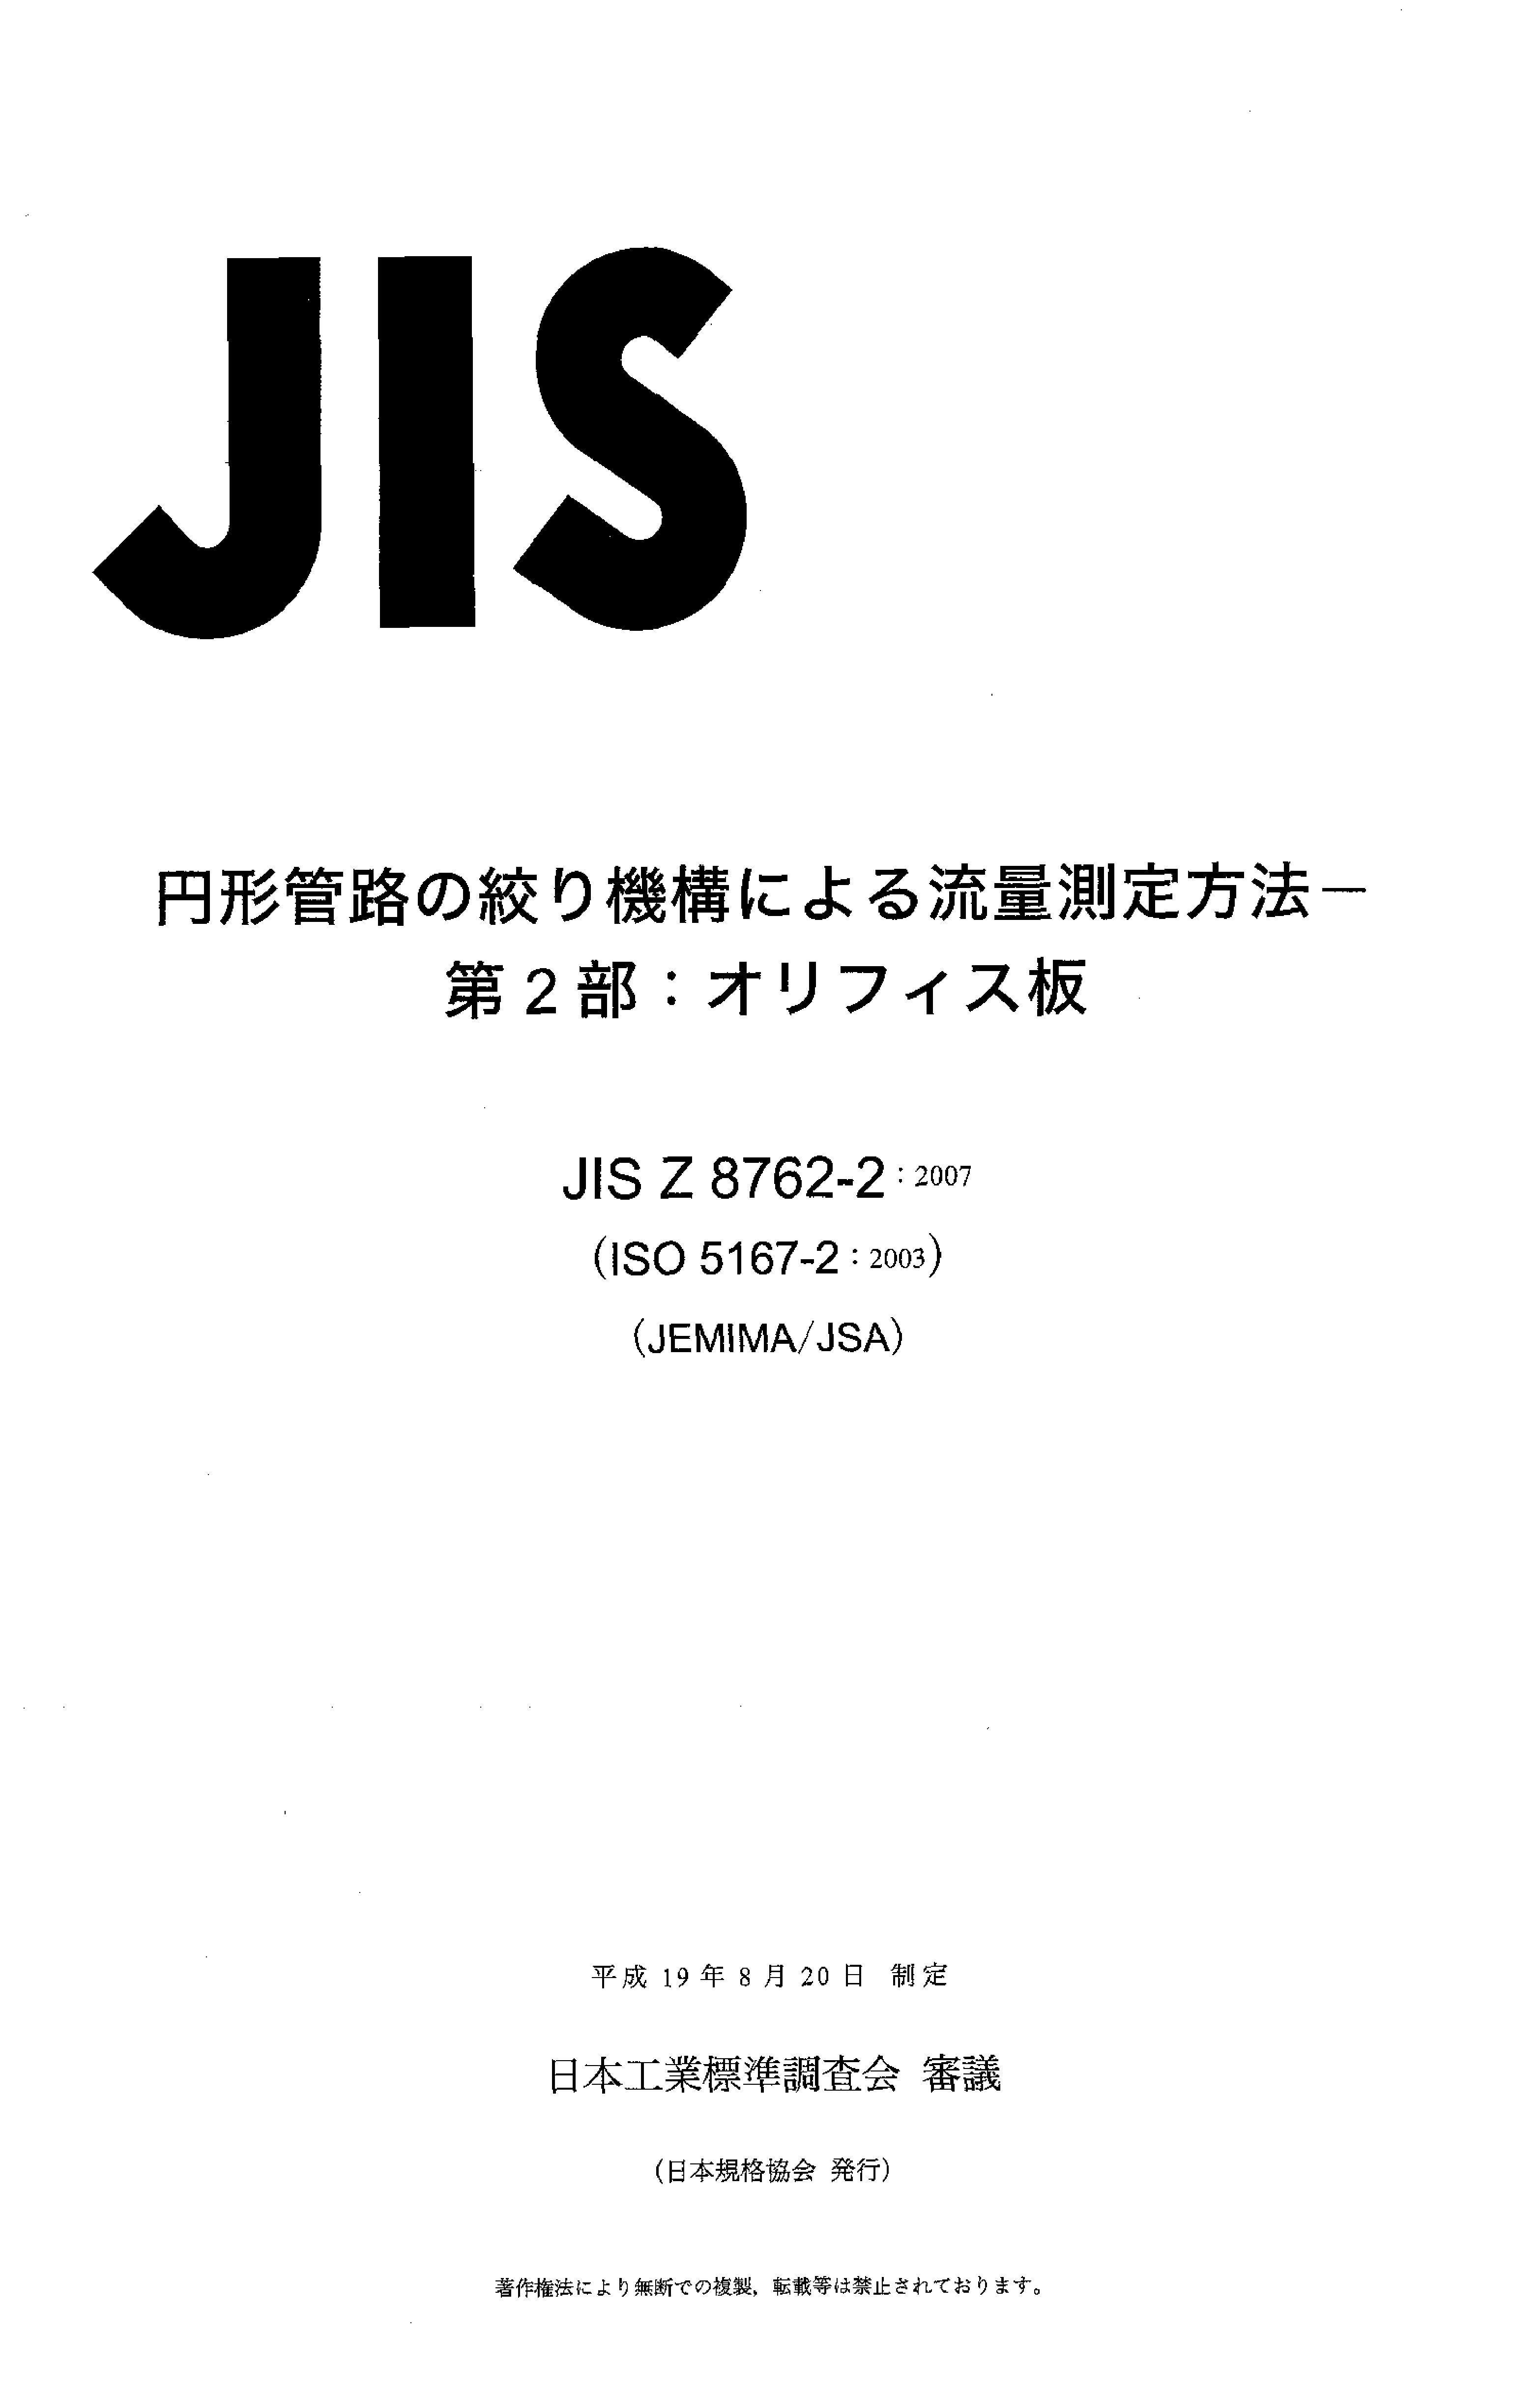 JIS Z 8762-2:2007